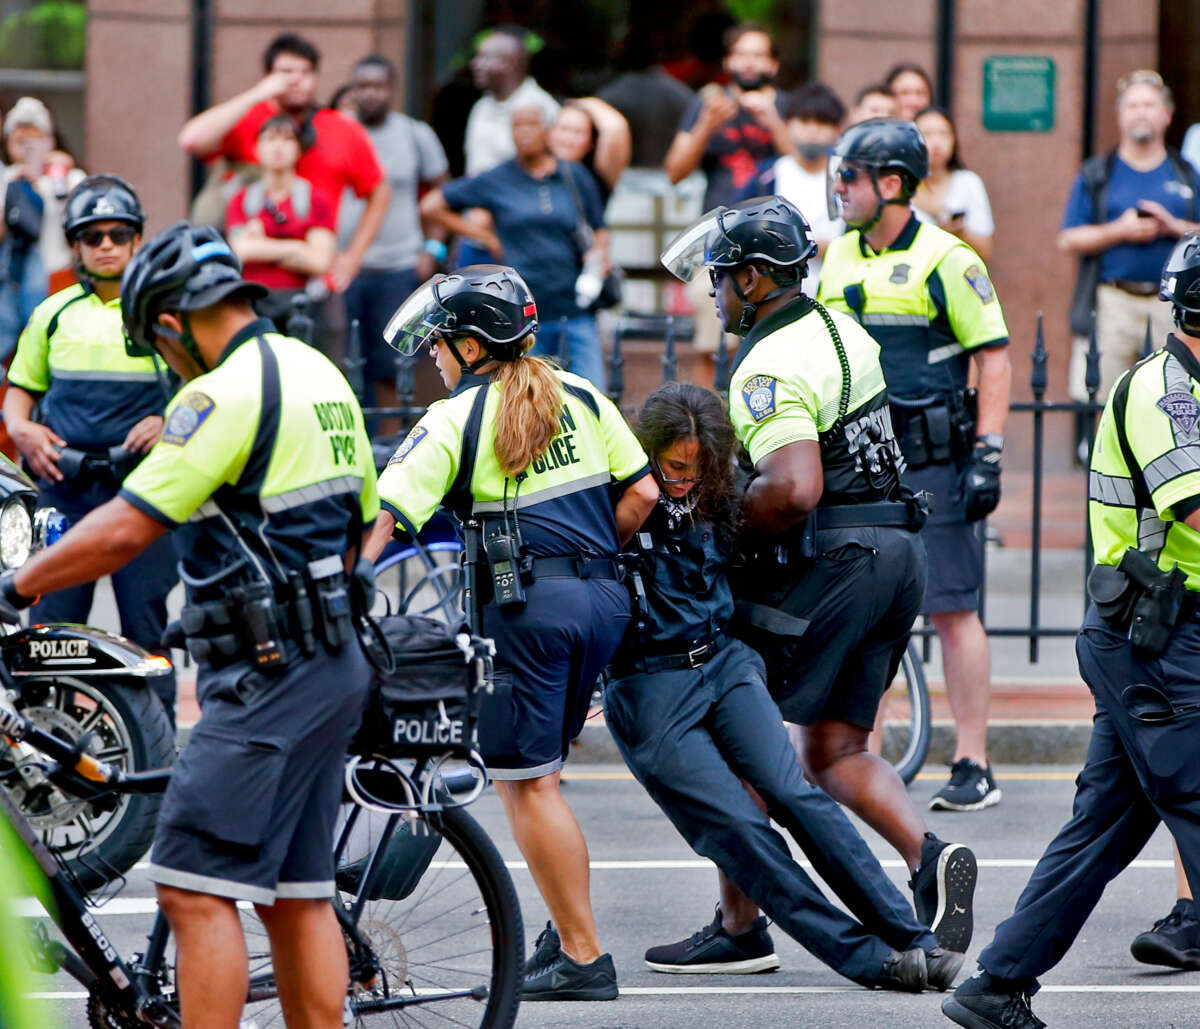 Cops drag a black-clad protester away